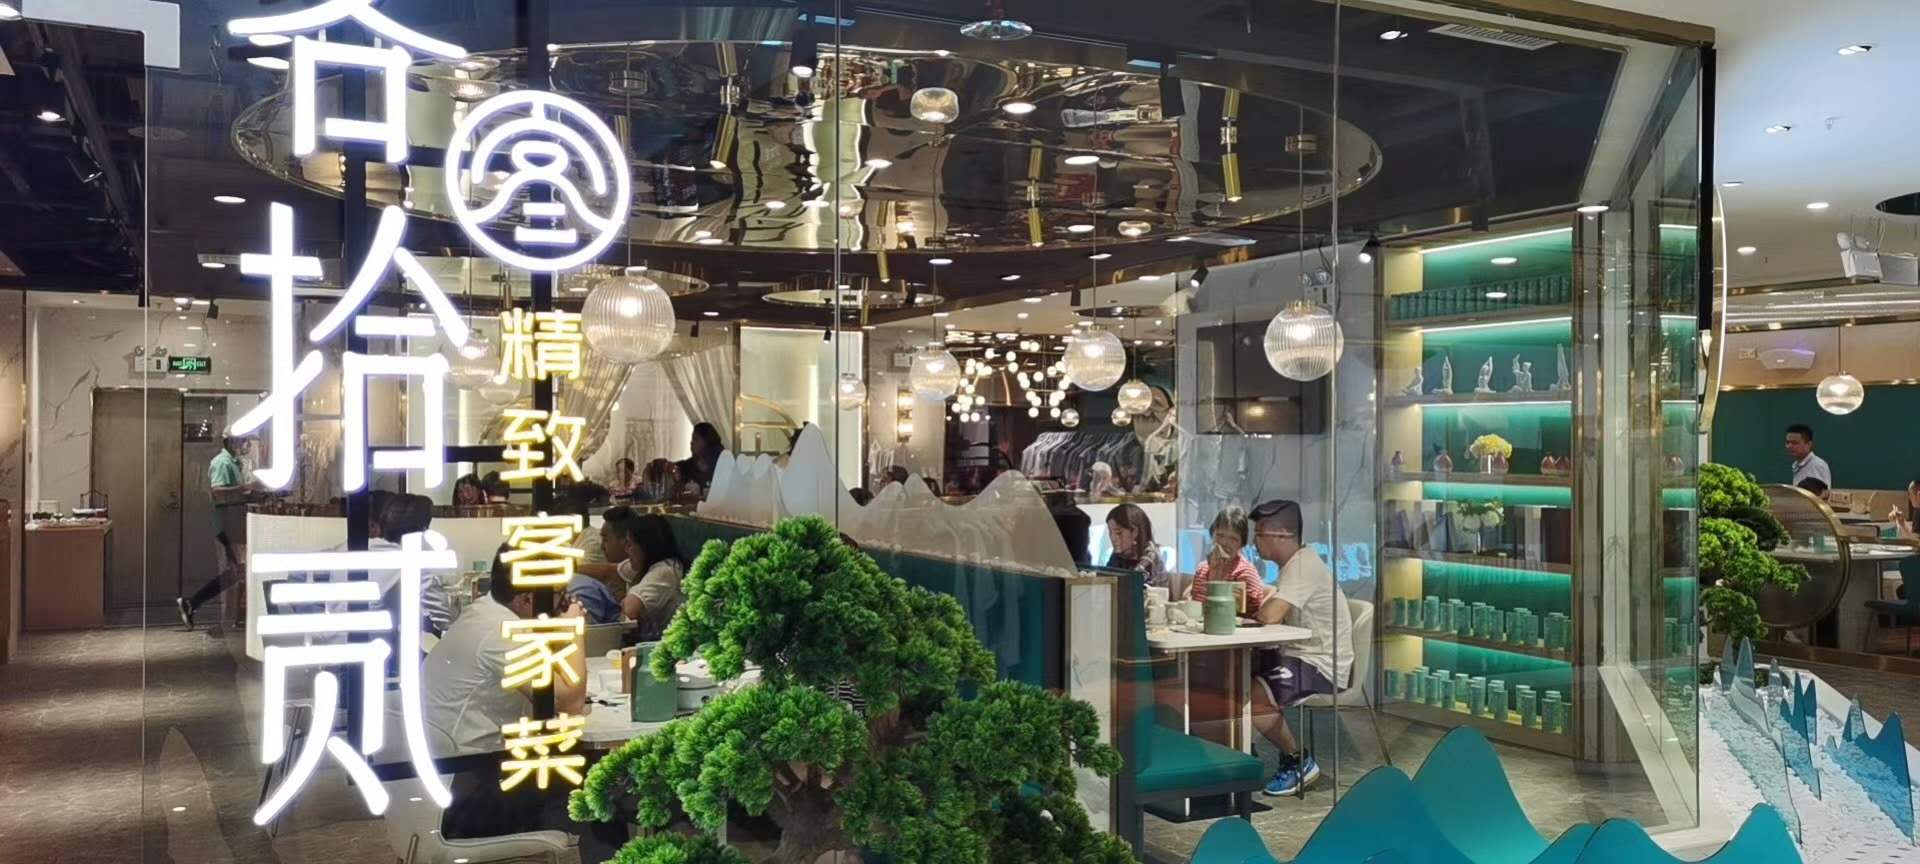 藤县从品牌文化出发，实现餐饮空间设计与美学文化的高度融合